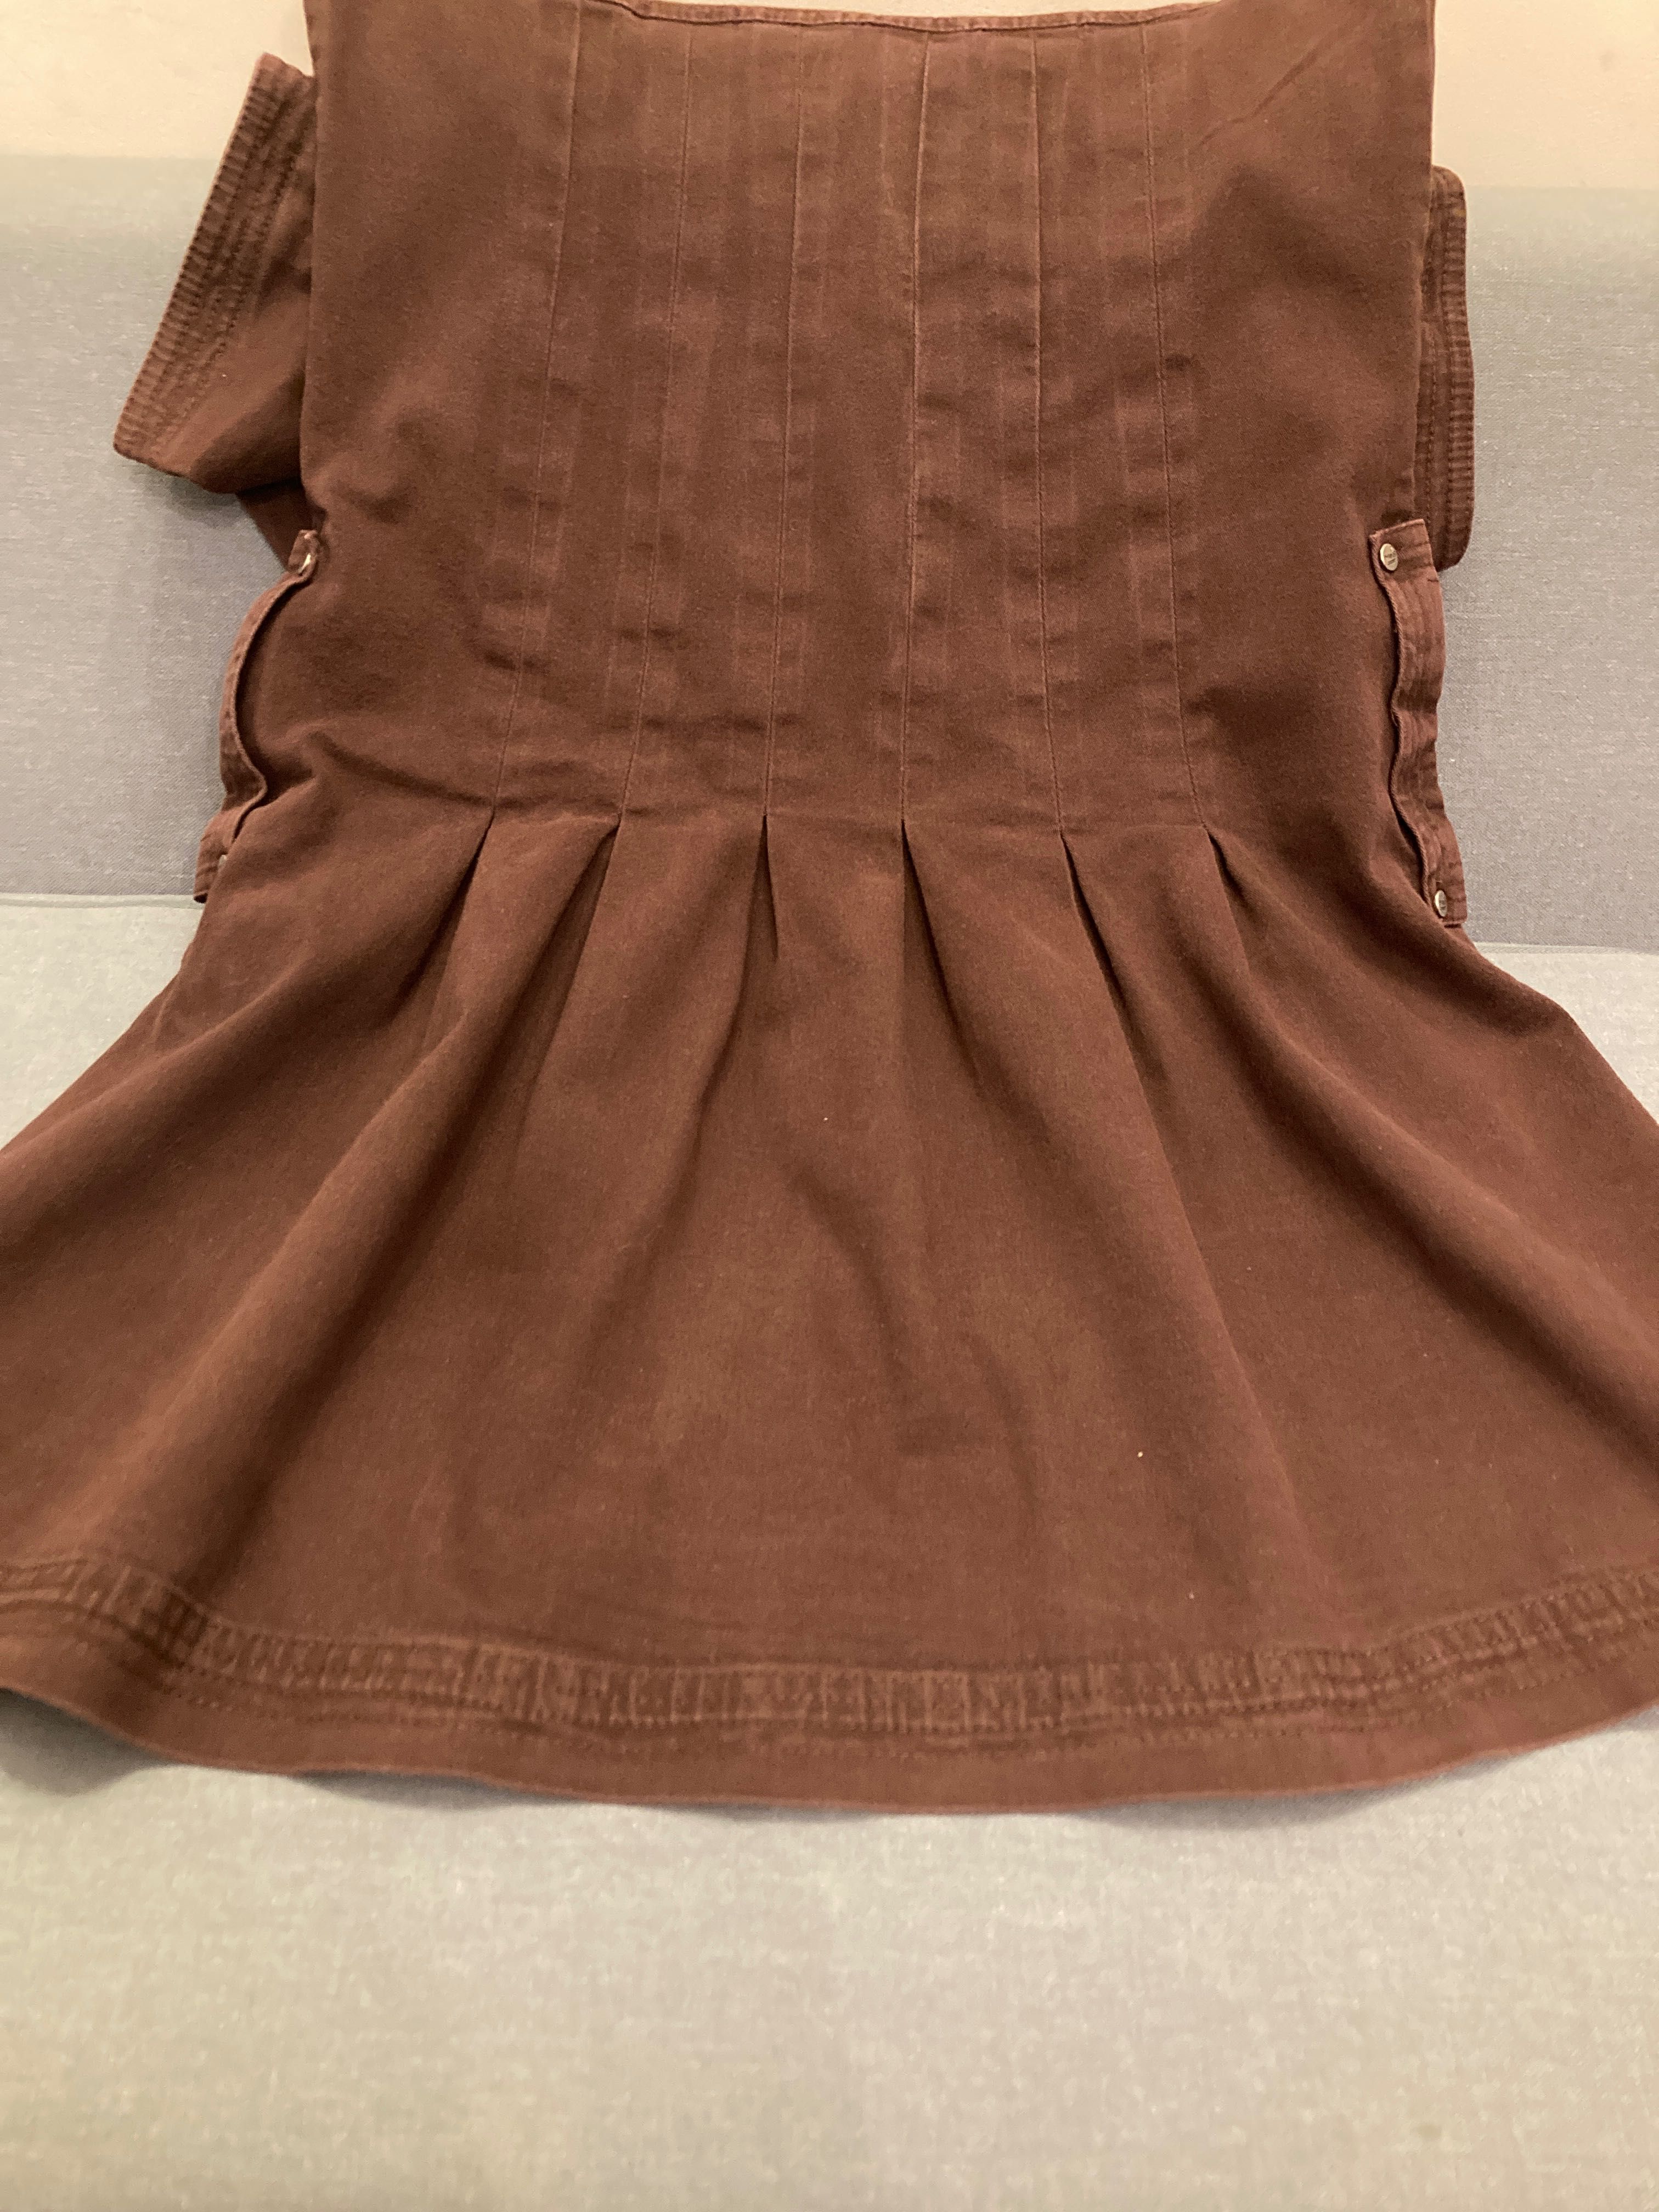 Czekoladowa sukienka MeS 34 z solidnej bawełny